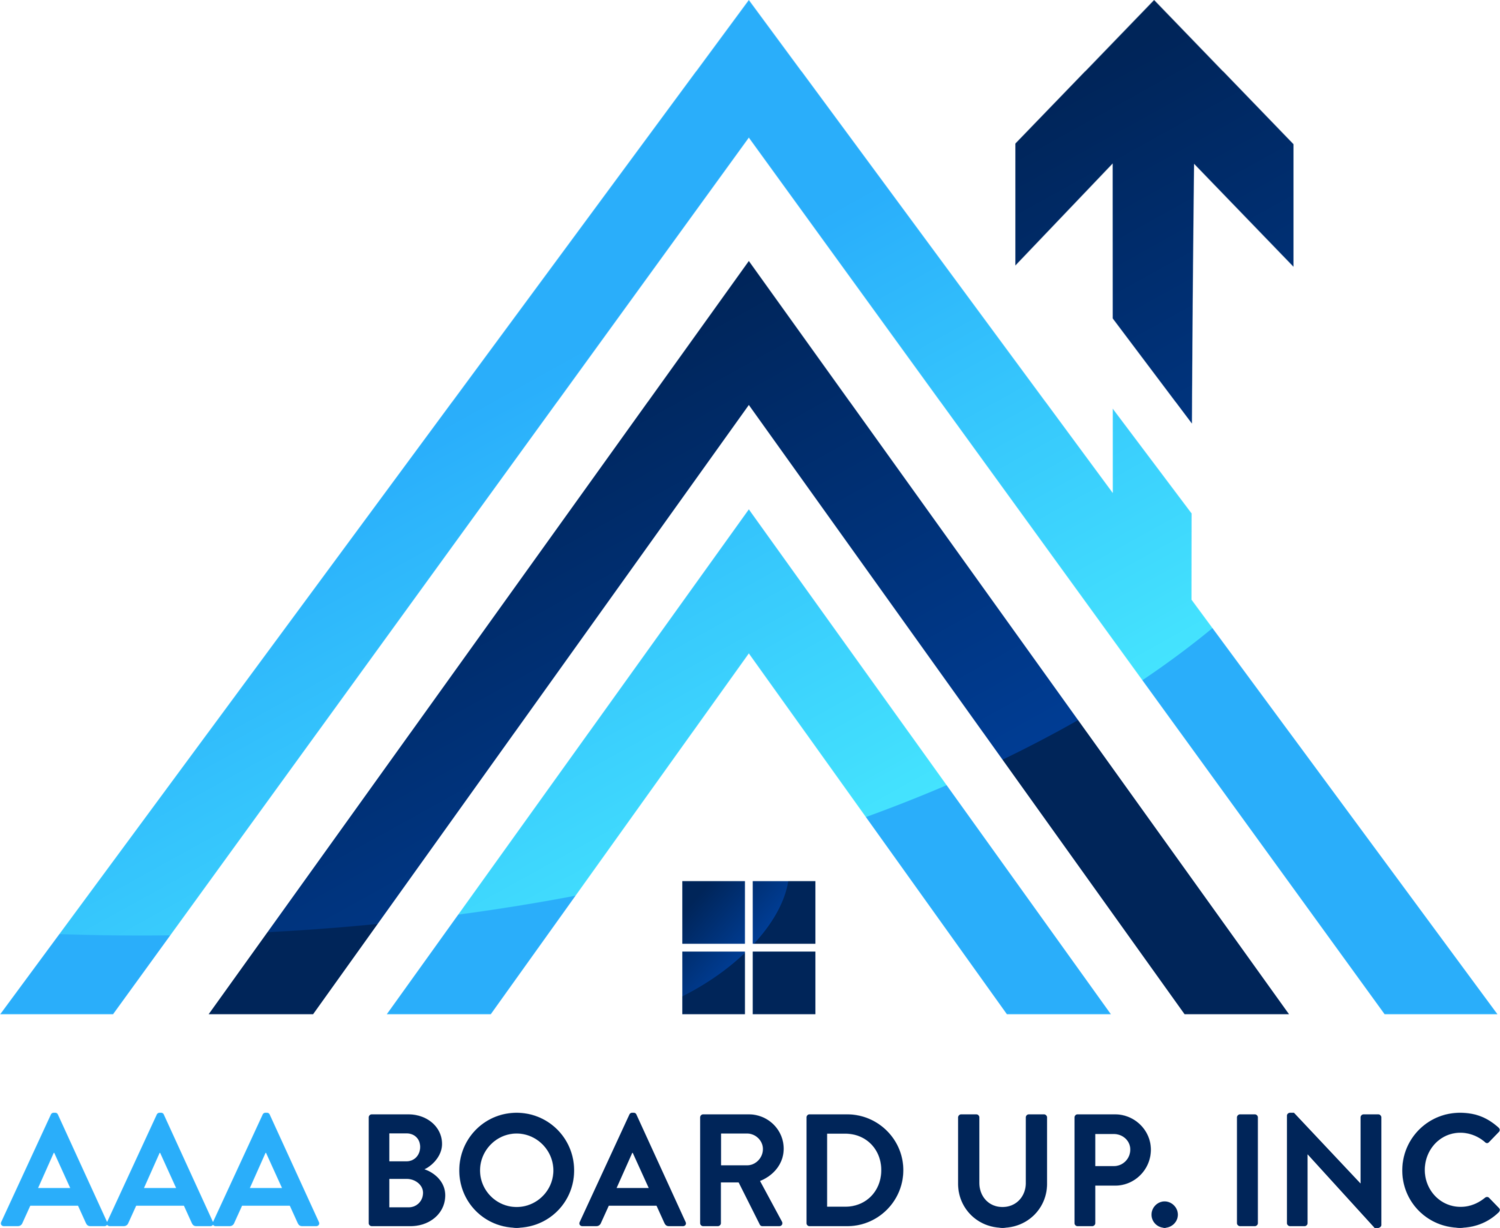 AAA Board Up Inc